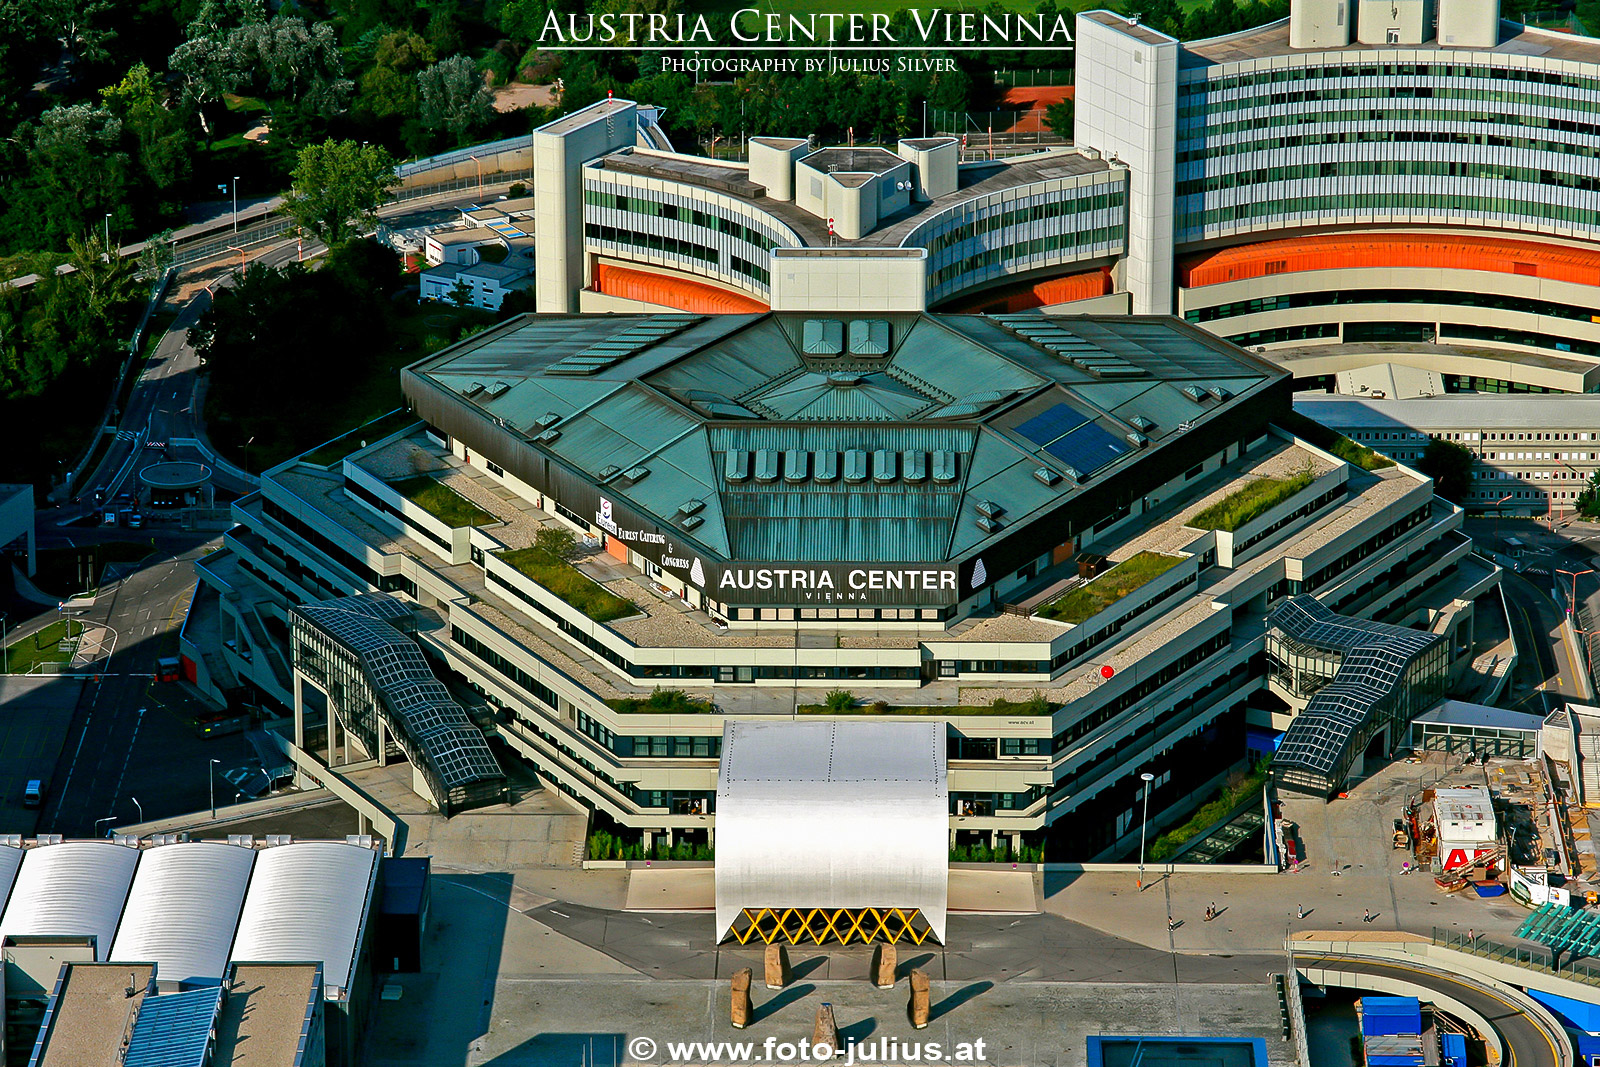 W3568a_Austria_Center_Vienna.jpg, 848kB